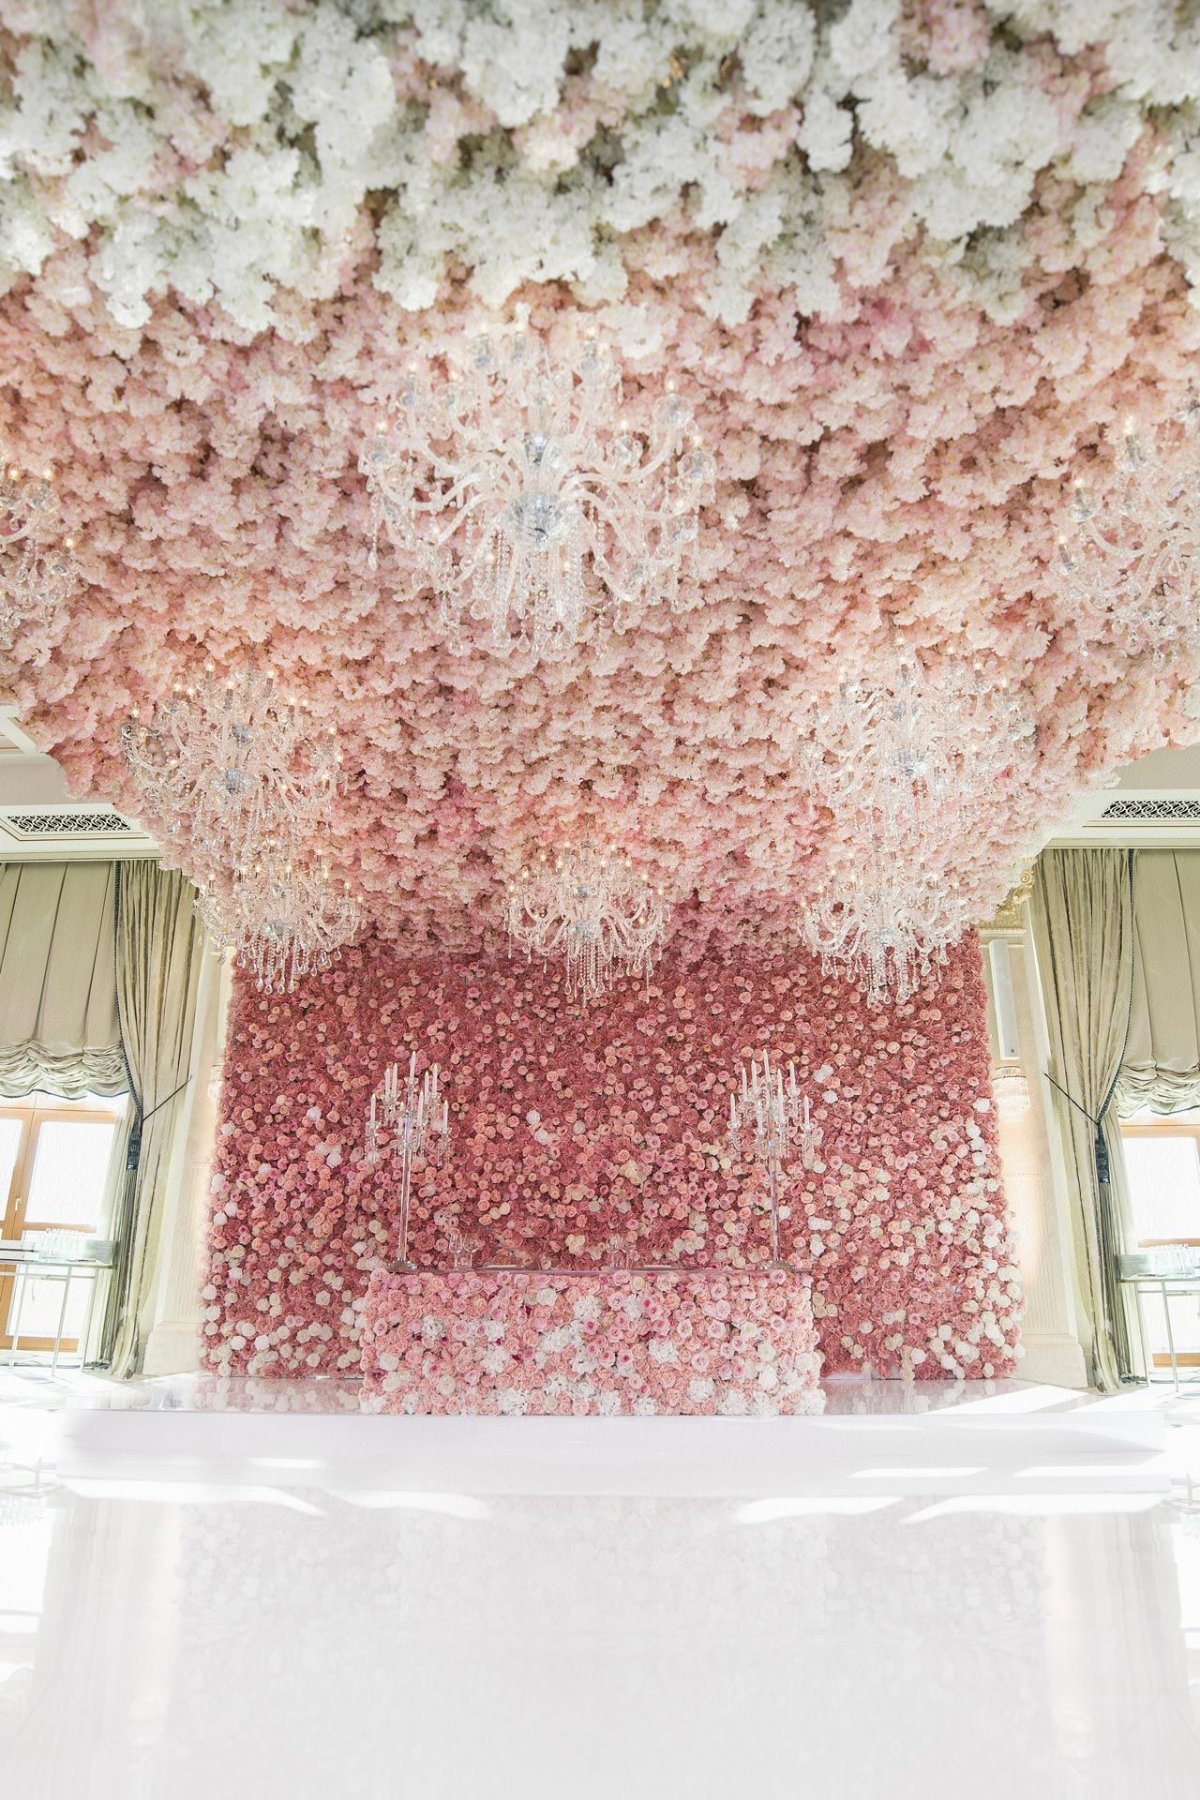 Студия декора Юлии Шакировой, цветочная свадьба, фото 17